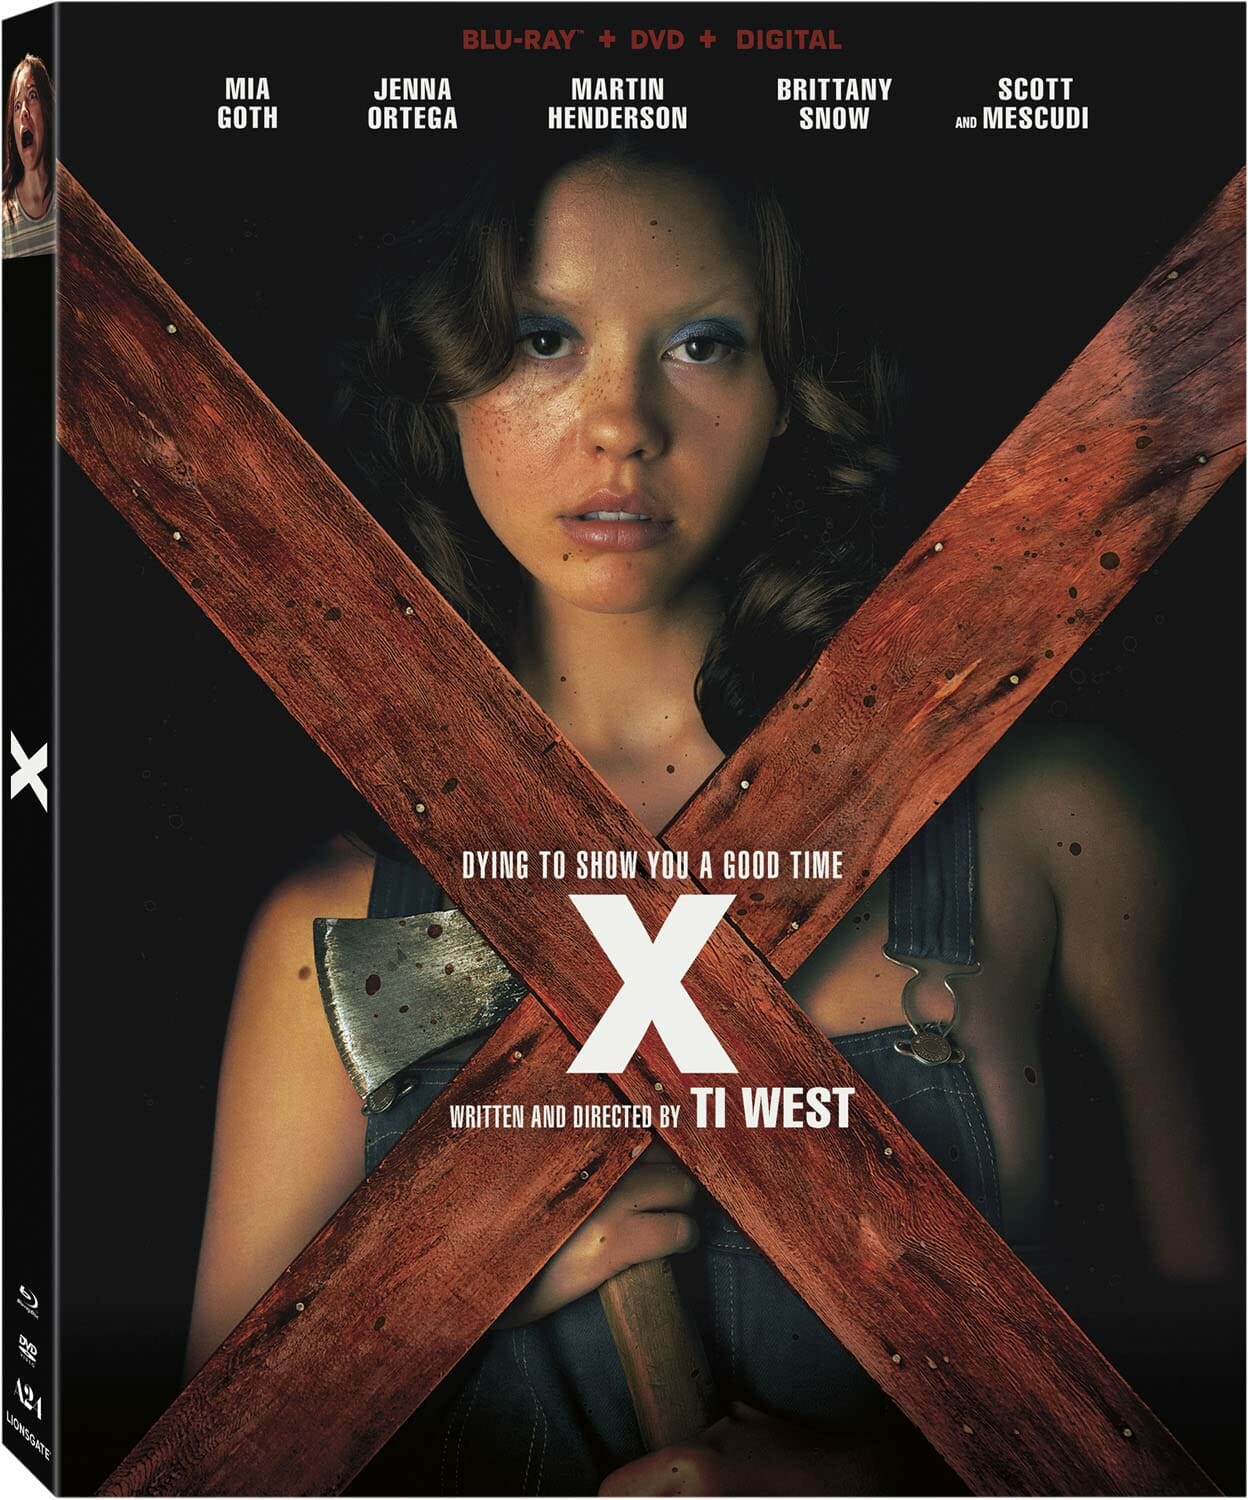 X (Ti West) (DVD / Blu-Ray Combo)